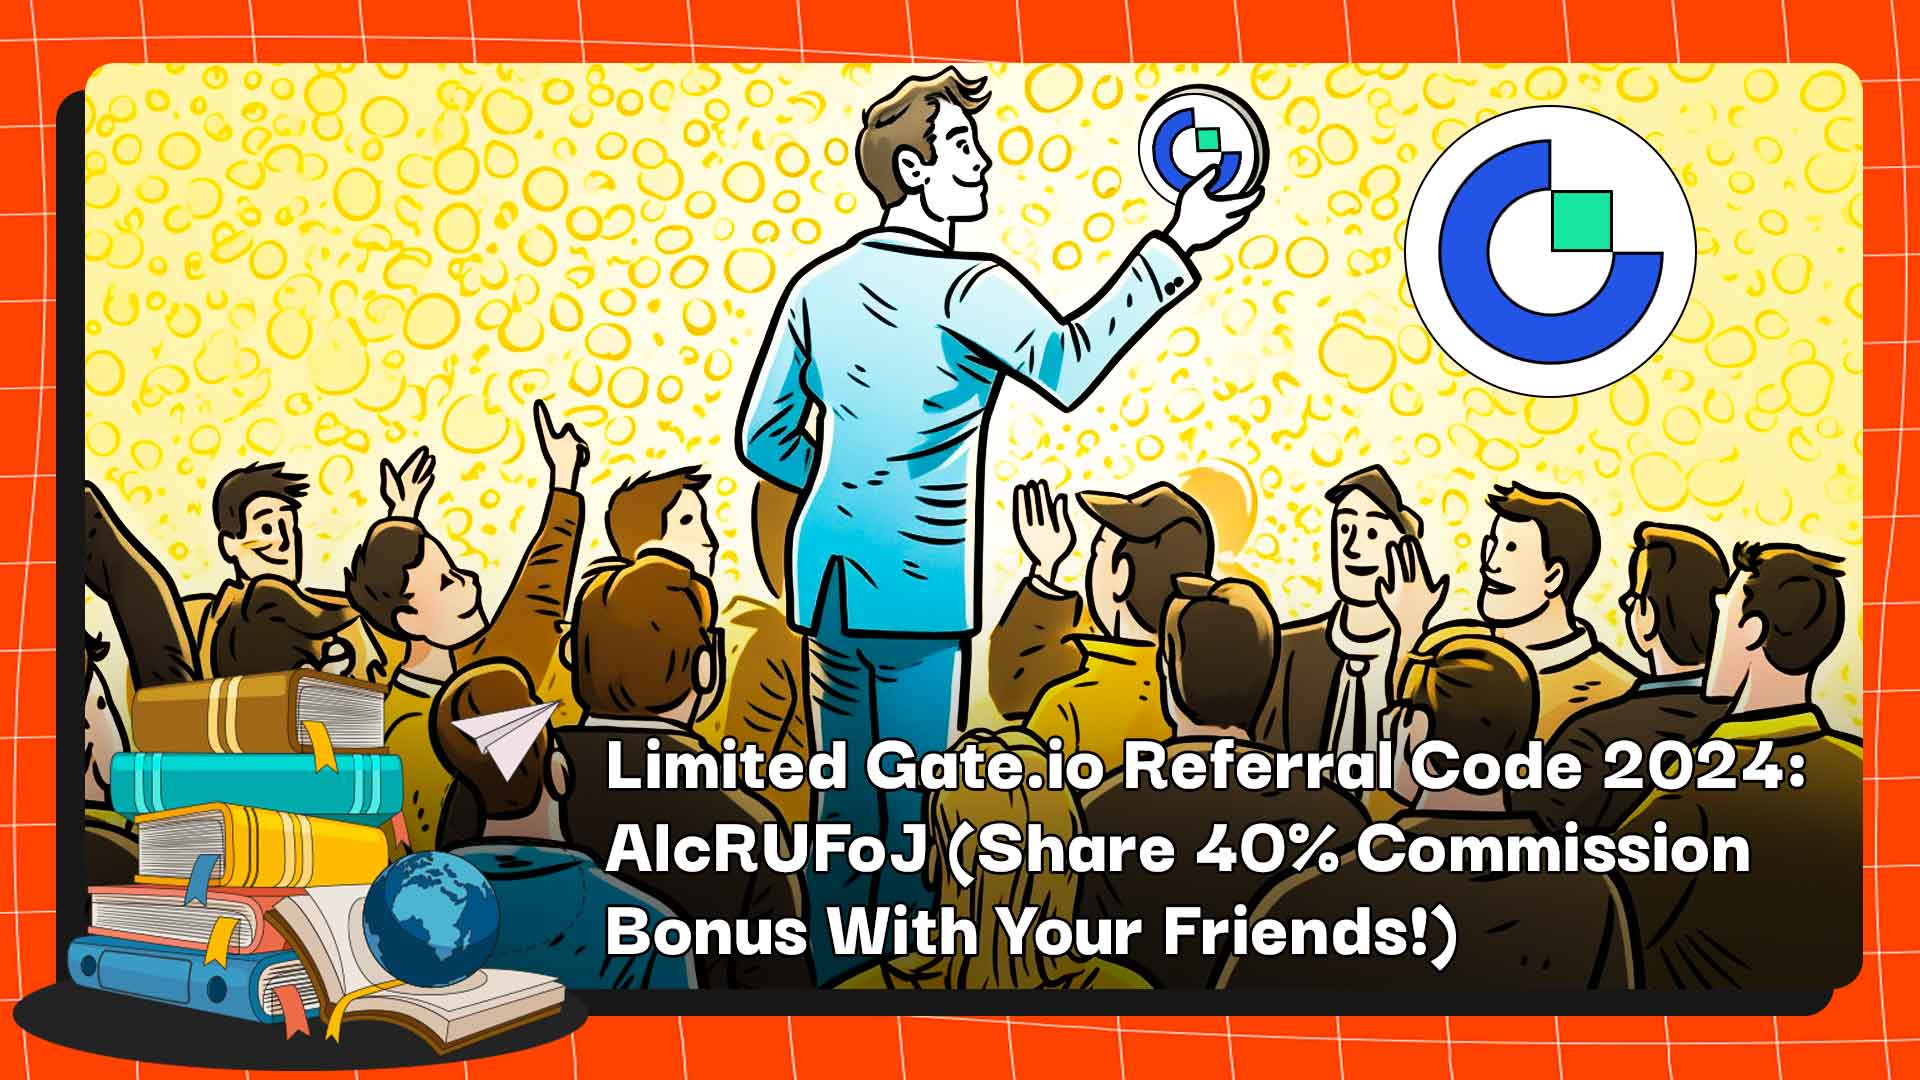 साइन अप करने और अपने दोस्तों के साथ 2024% तक कमीशन साझा करने के लिए Get.io रेफरल कोड 40 "AlcRUFoJ" का उपयोग करें।